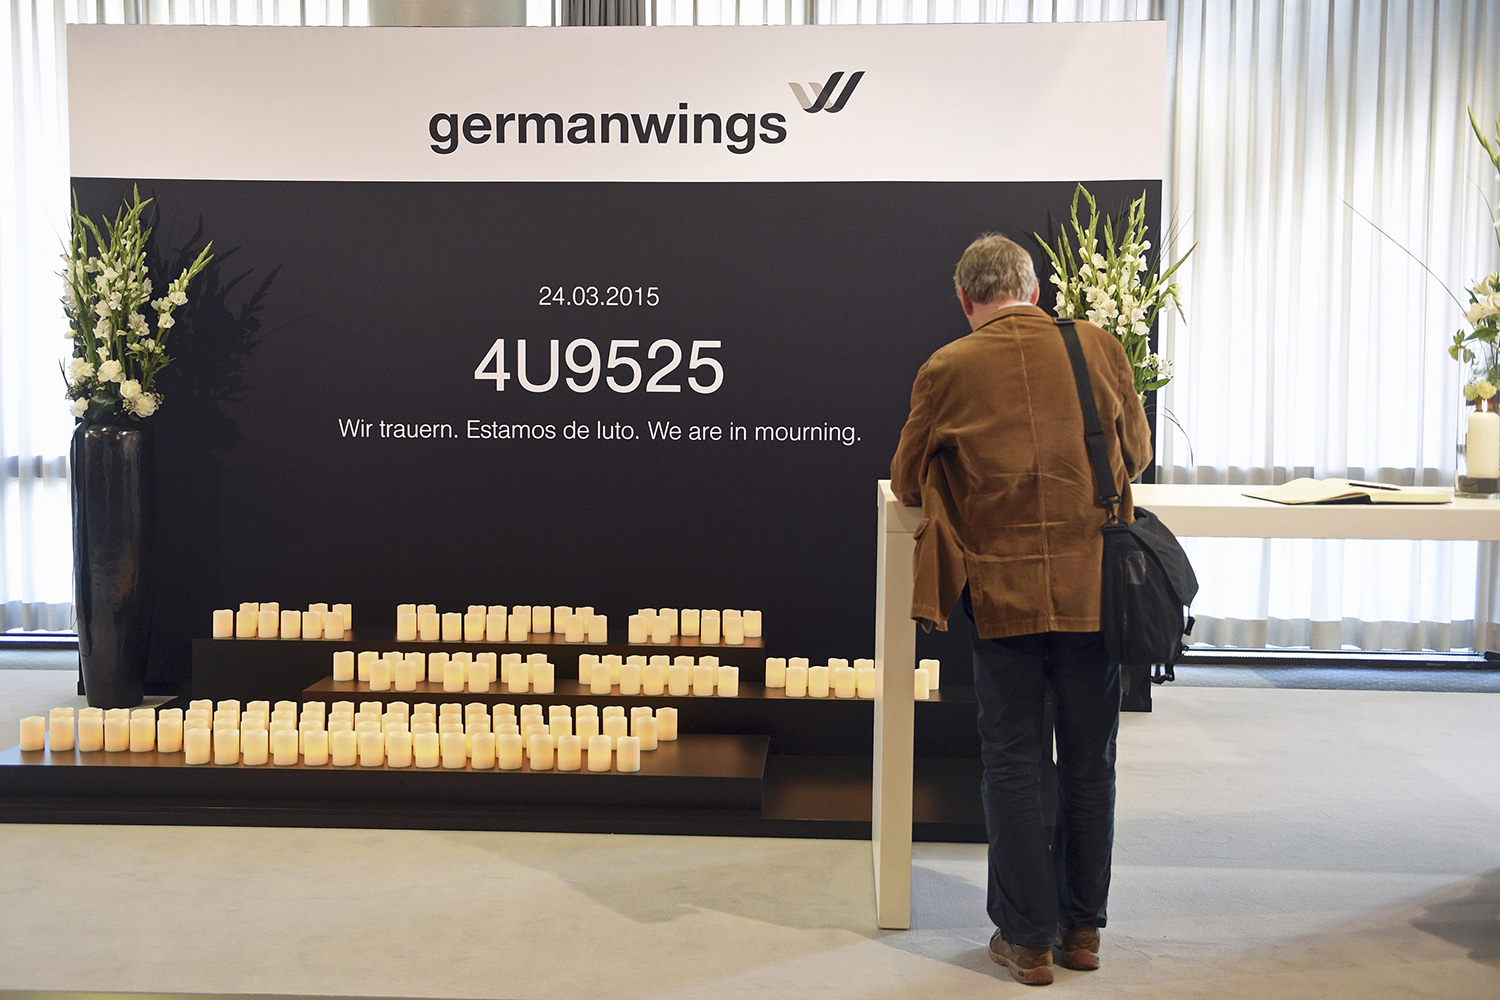 El copiloto de Germanwings ensayó la maniobra que provocó la tragedia